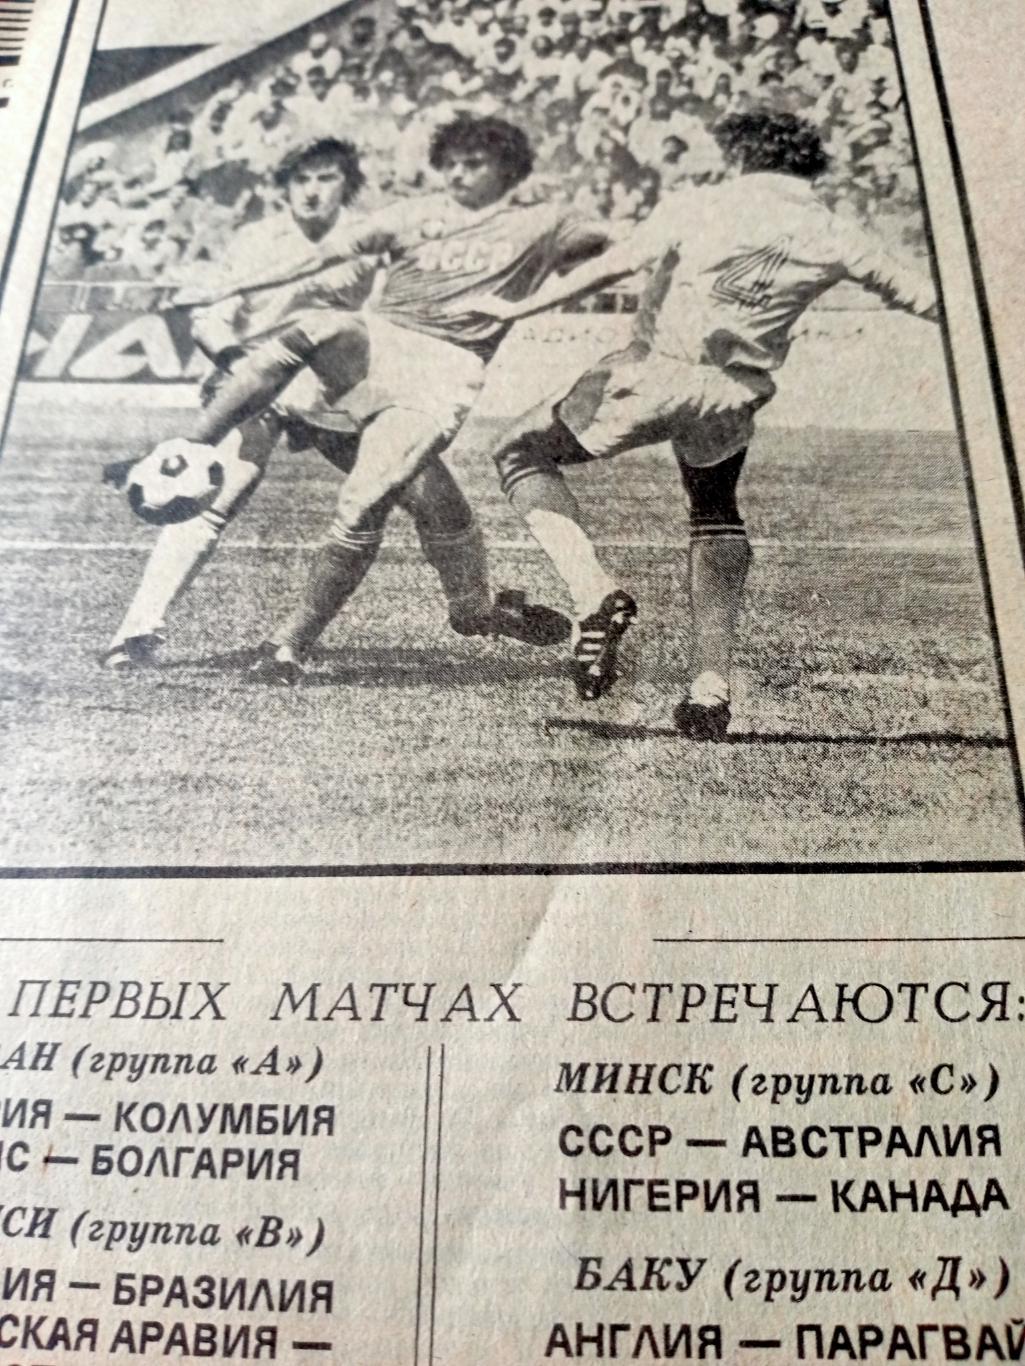 ЧМ по футболу. Юниоры. Советский спорт. 1985 год. 24 августа